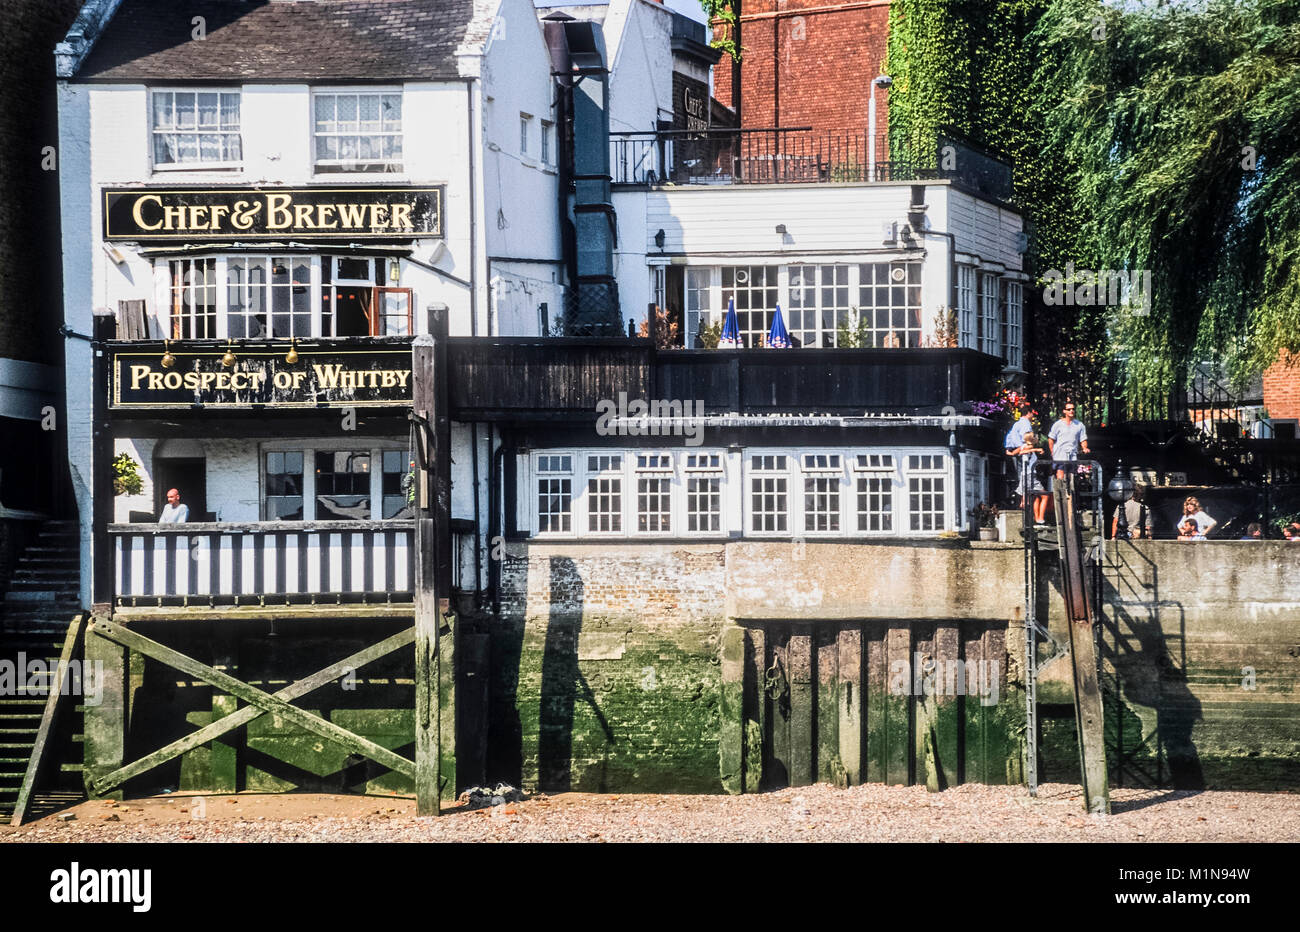 La perspective de Whitby, l'une des plus anciennes maisons publiques à Londres et le plus vieux pub de Riverside, sur la Tamise. Banque D'Images